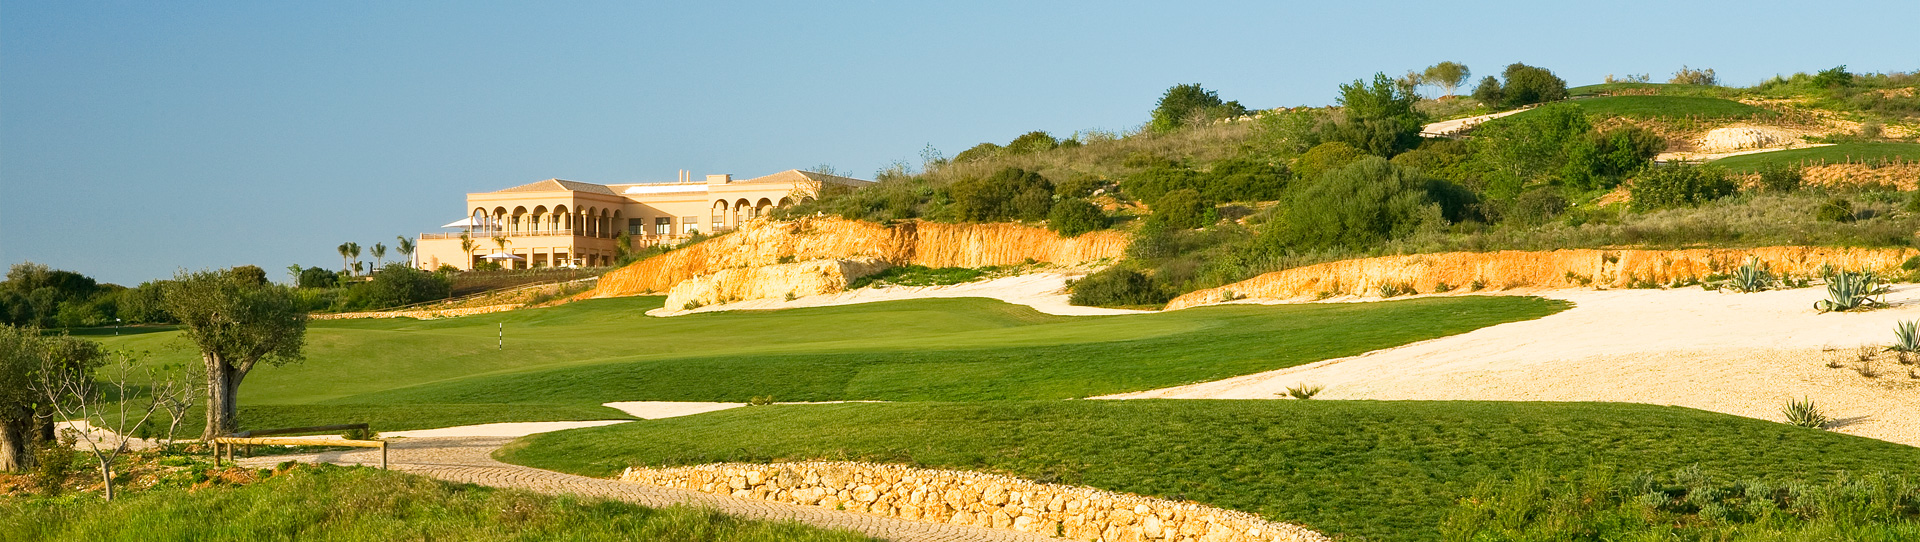 Portugal golf courses - Amendoeira Faldo - Photo 1